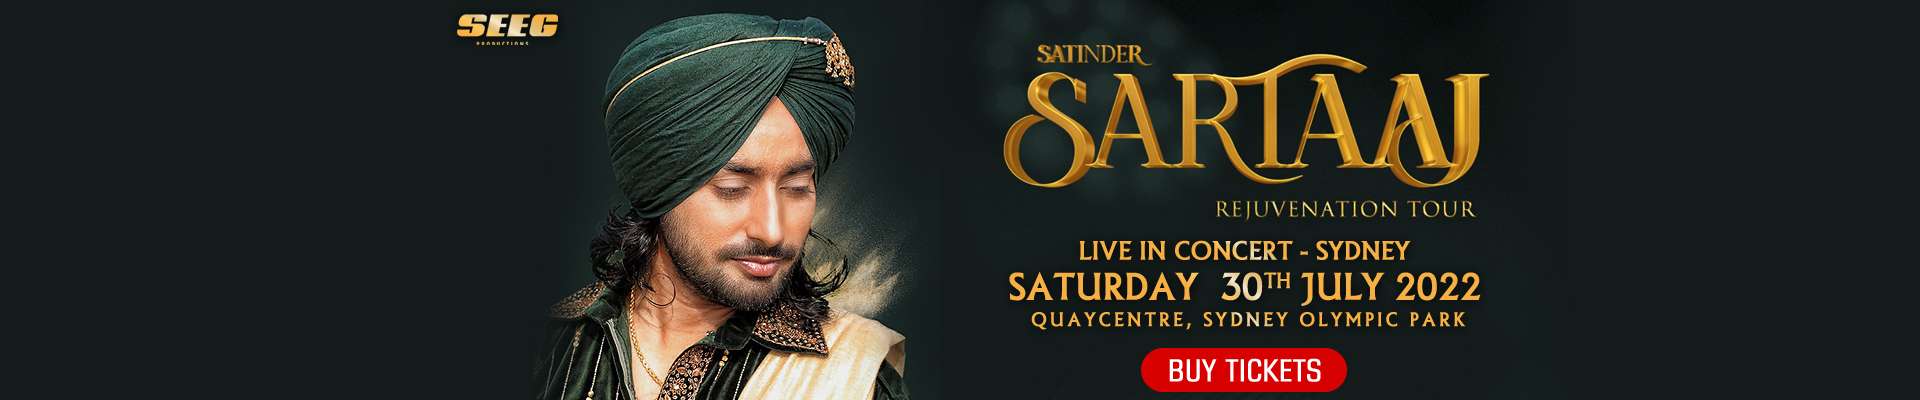 Rejuvenation Tour - Satinder Sartaaj Live In Concert Sydney 2022